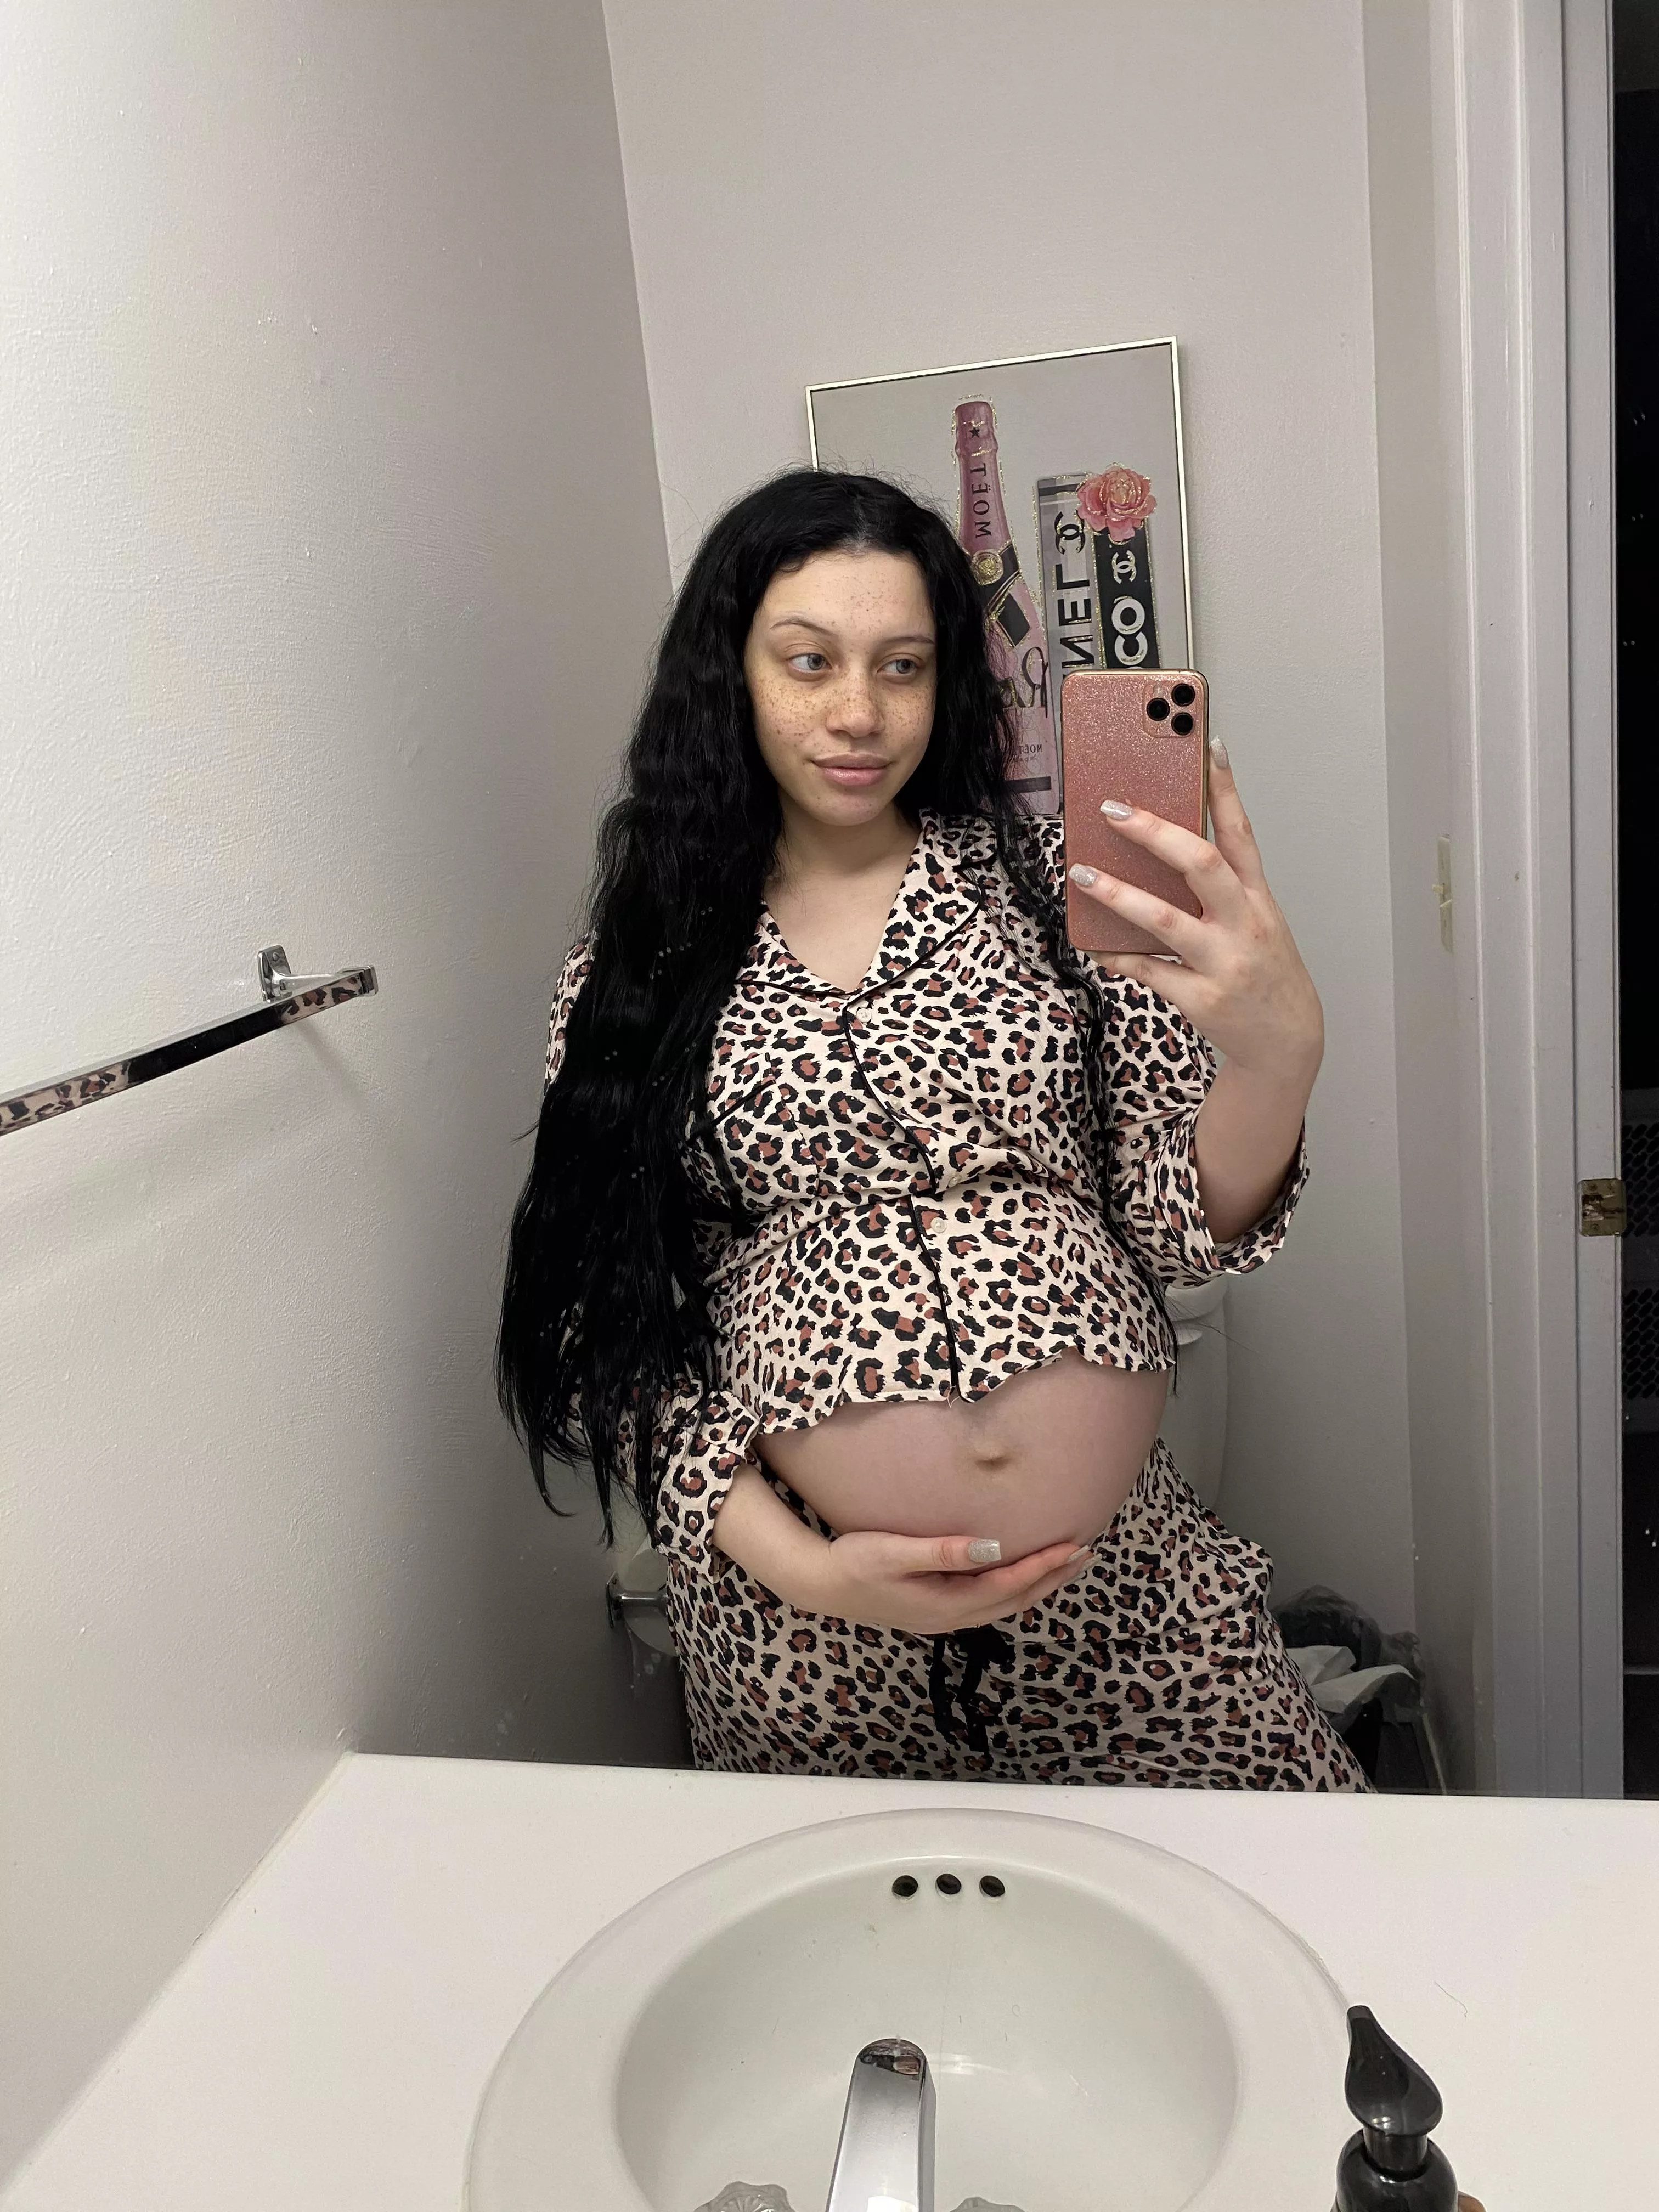 38 неделя беременности чешется грудь фото 28